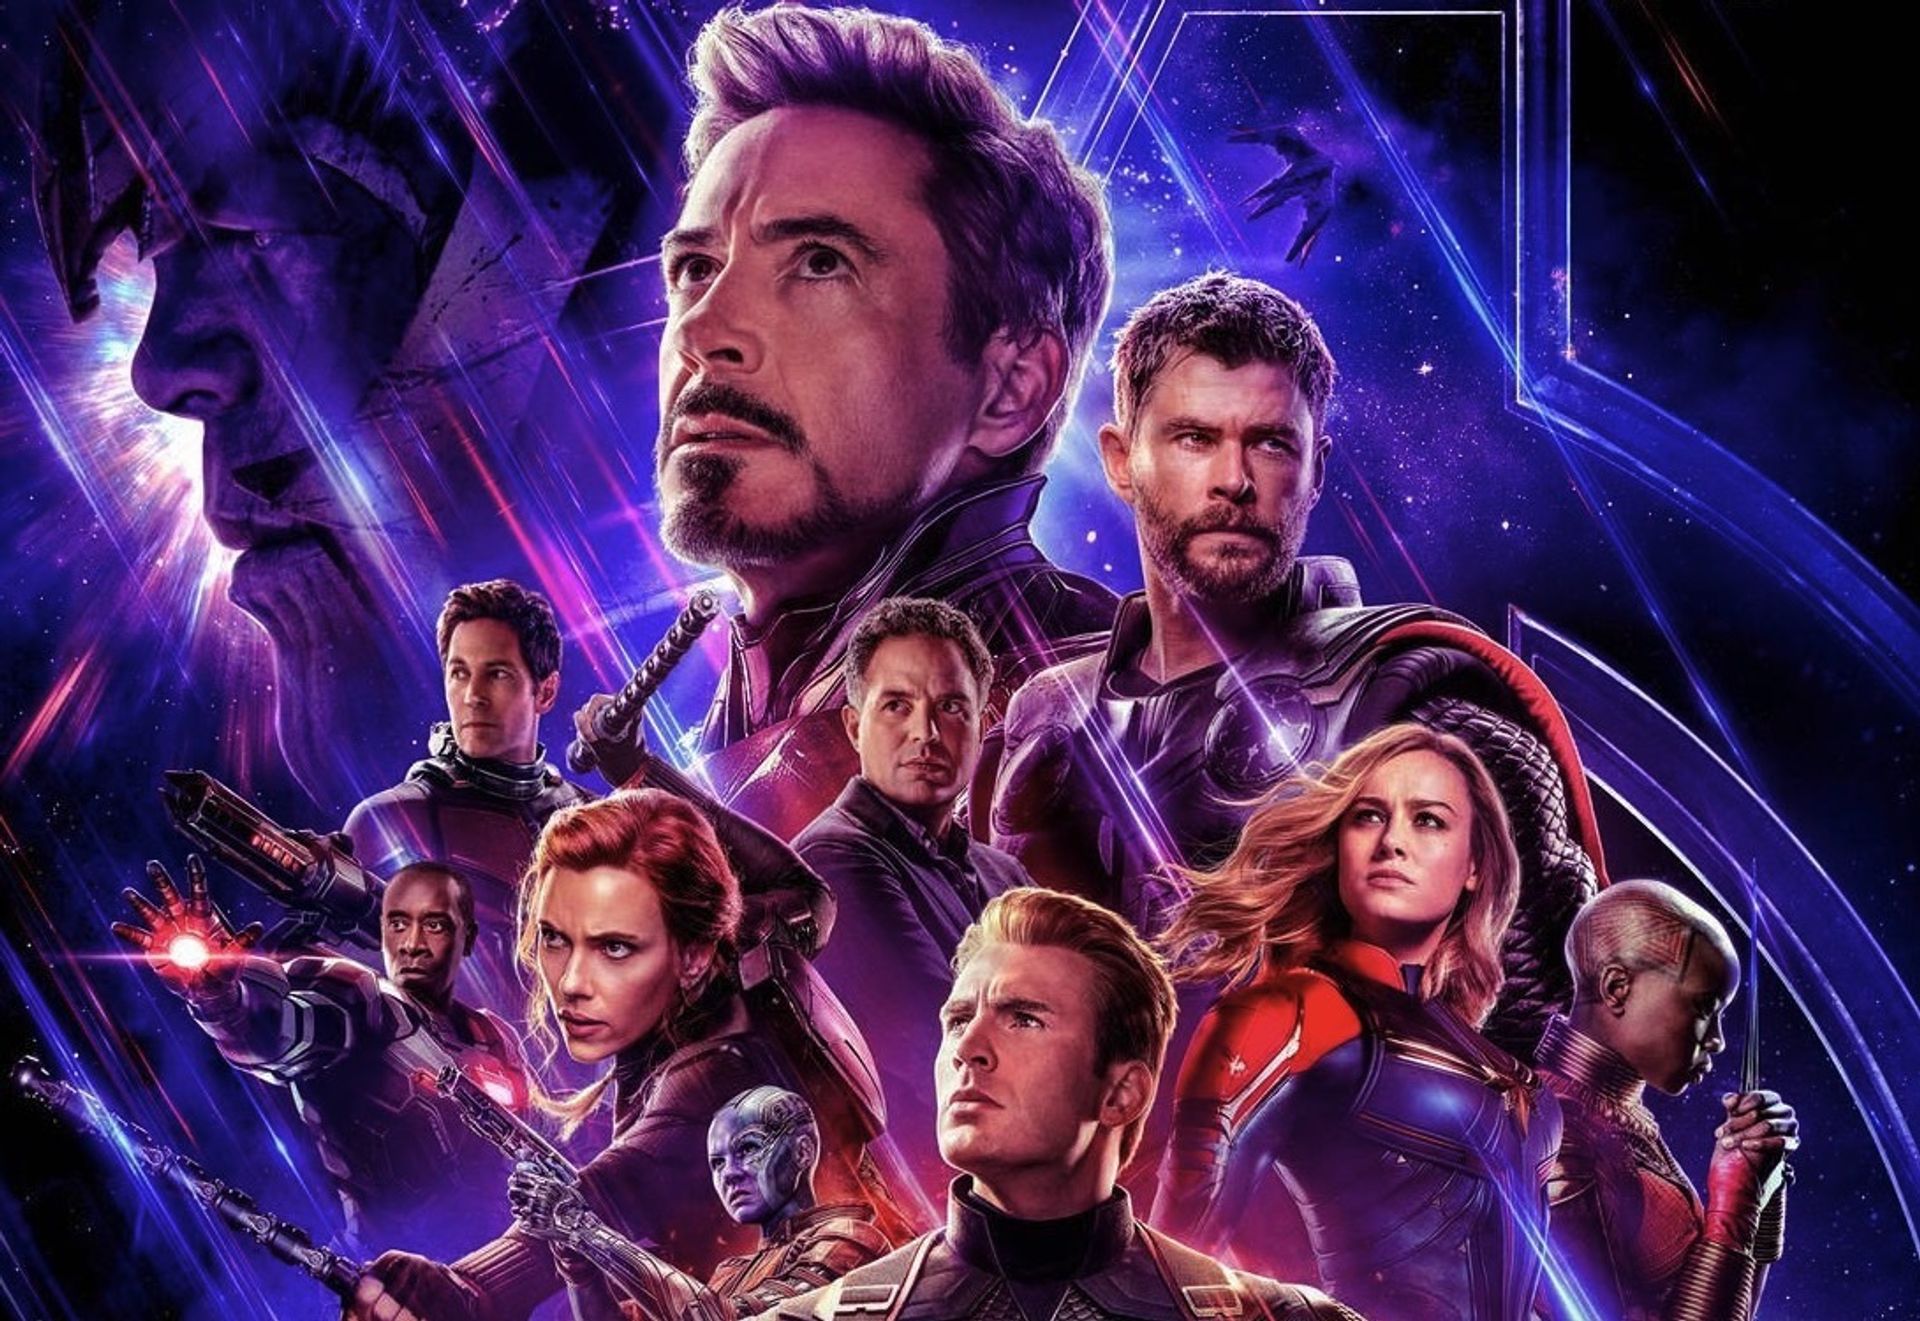 Avengers Endgame trailer Thanos